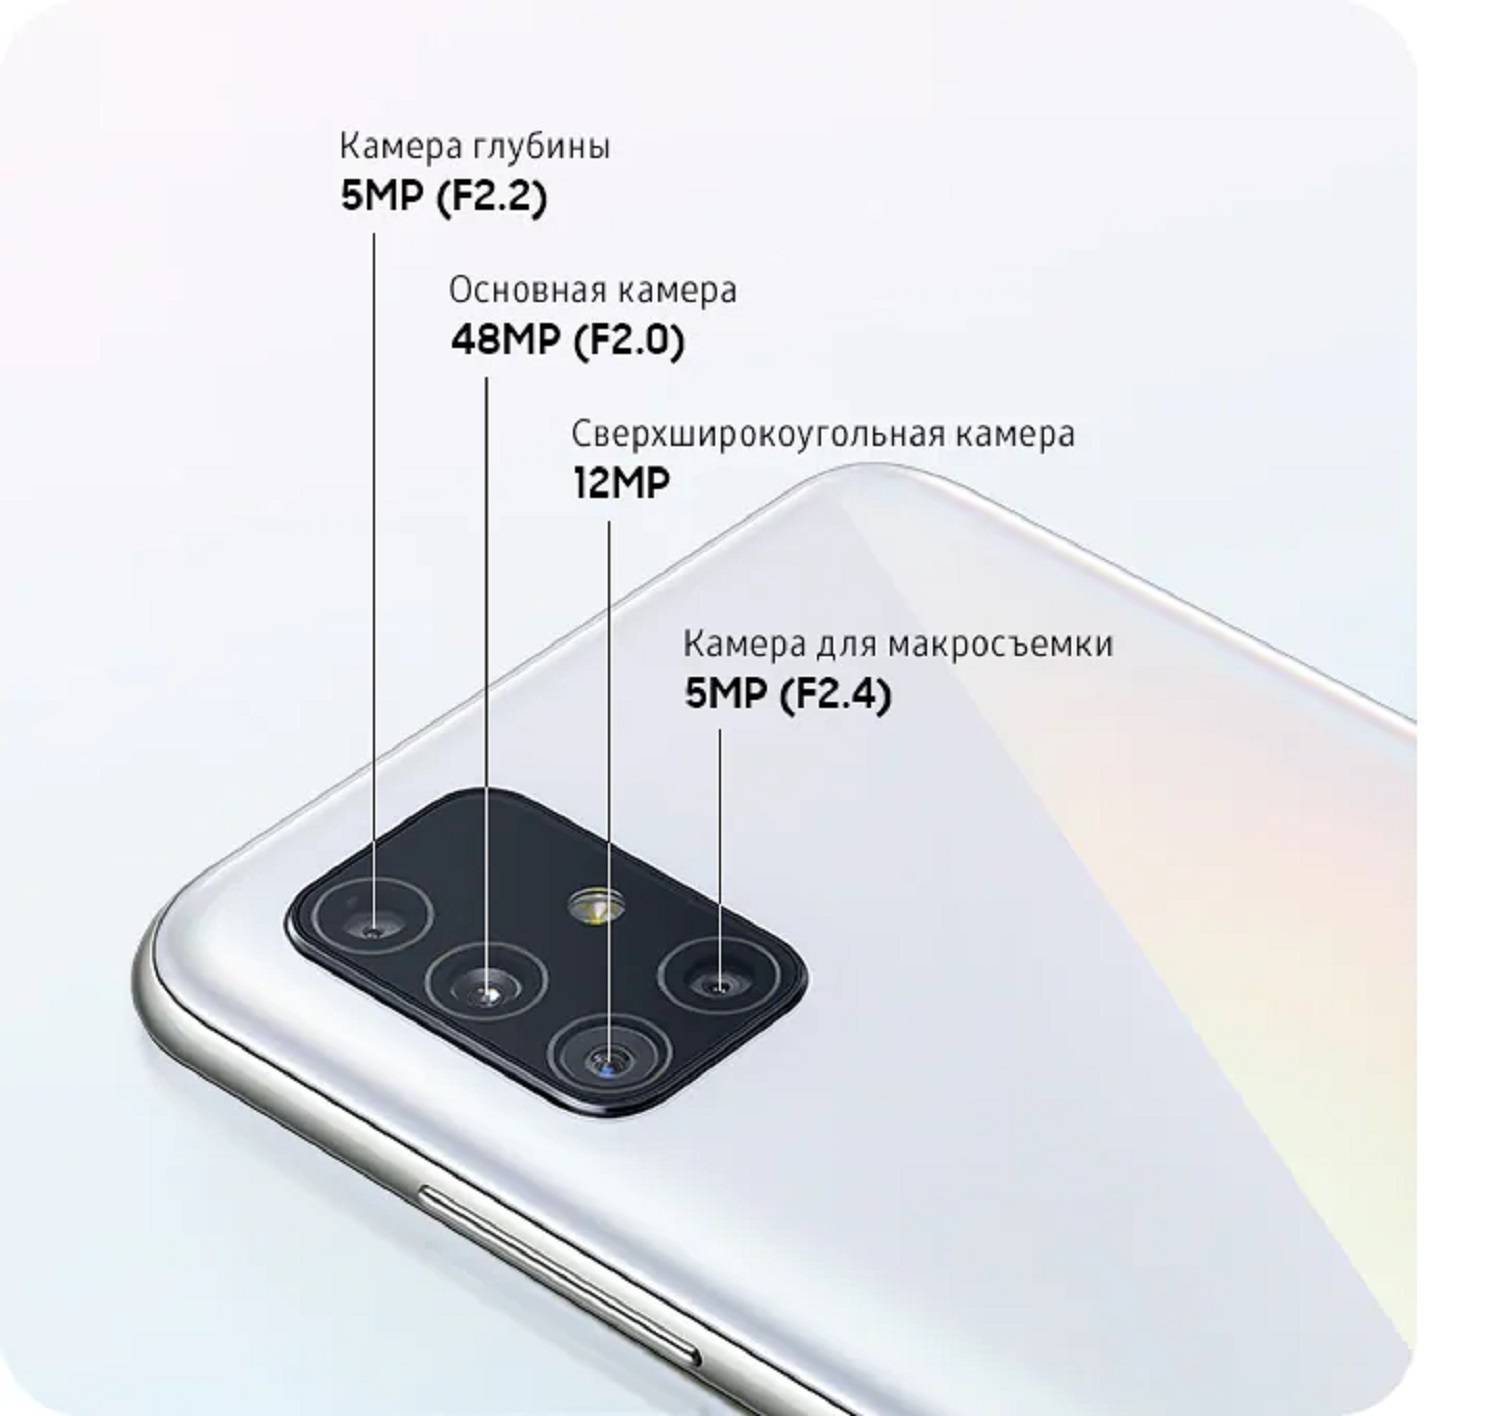 Тест смартфона samsung galaxy s7: непревзойденный телефон